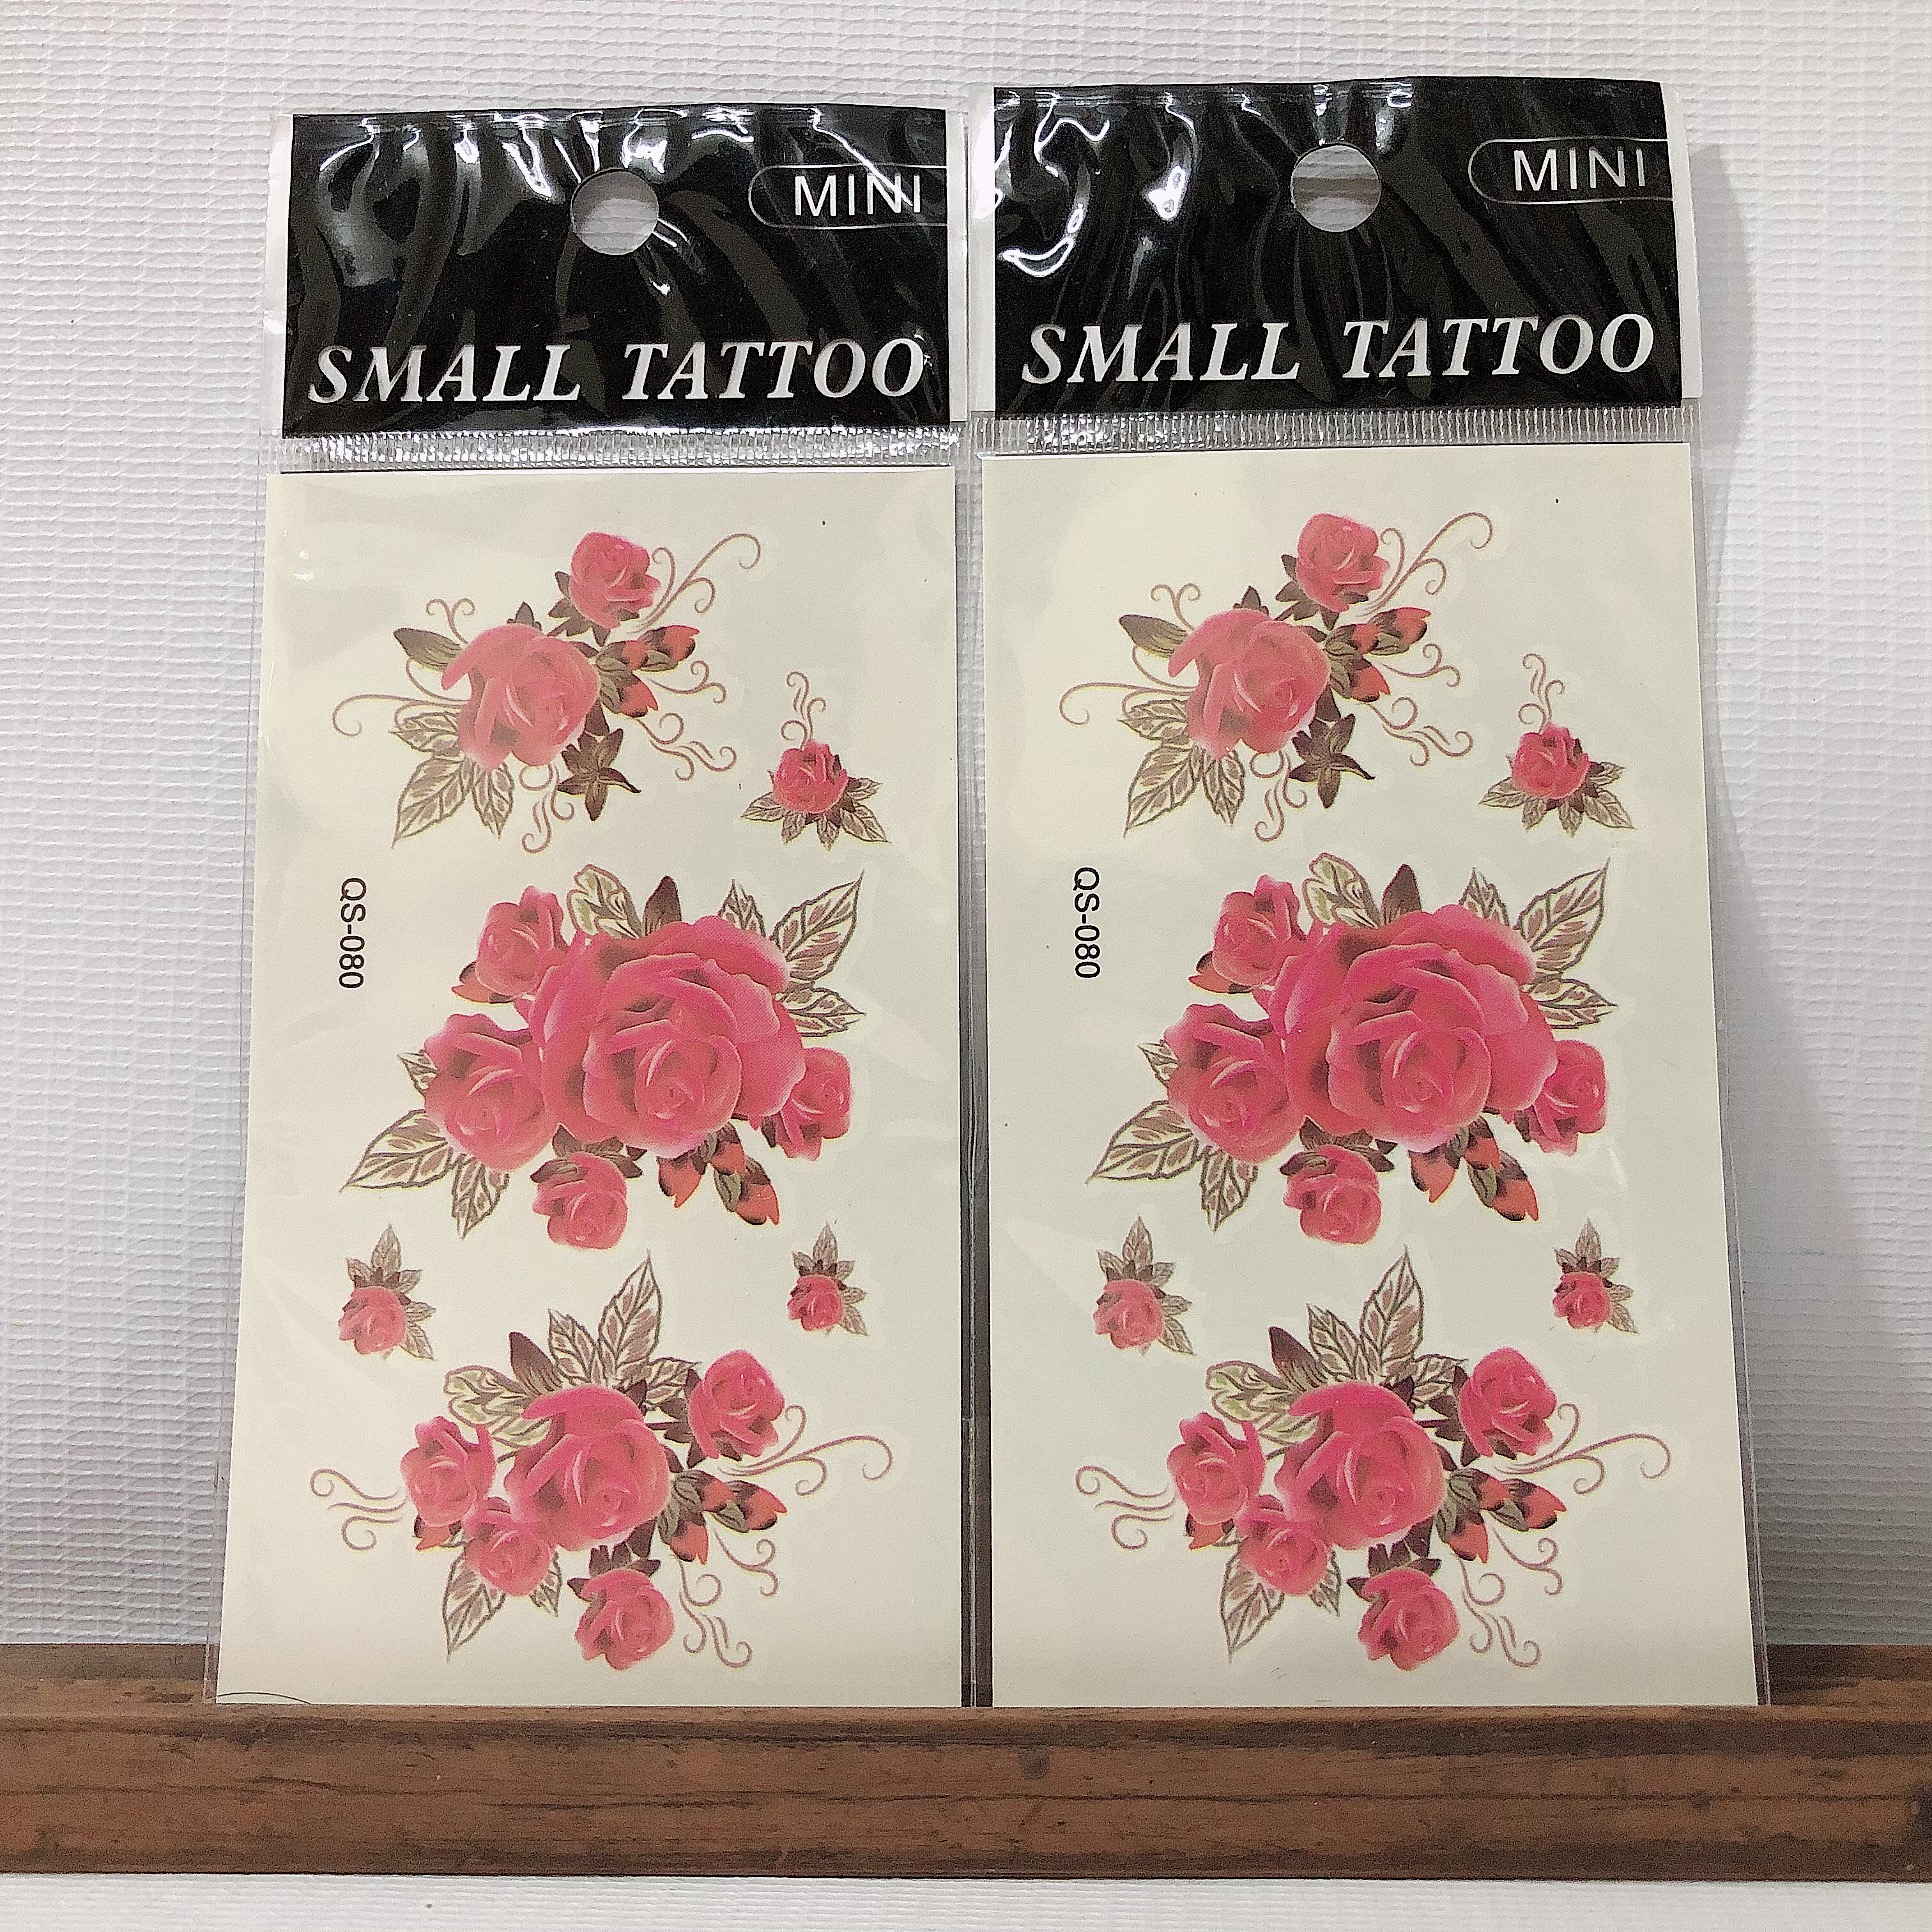 Combo 2 hình xăm dán tattoo đặc biệt chủ đề hoa xinh10x6cm- phù hợp vị trí ở tay, chân, đùi, ngực, vai, lưng, cơ thể...